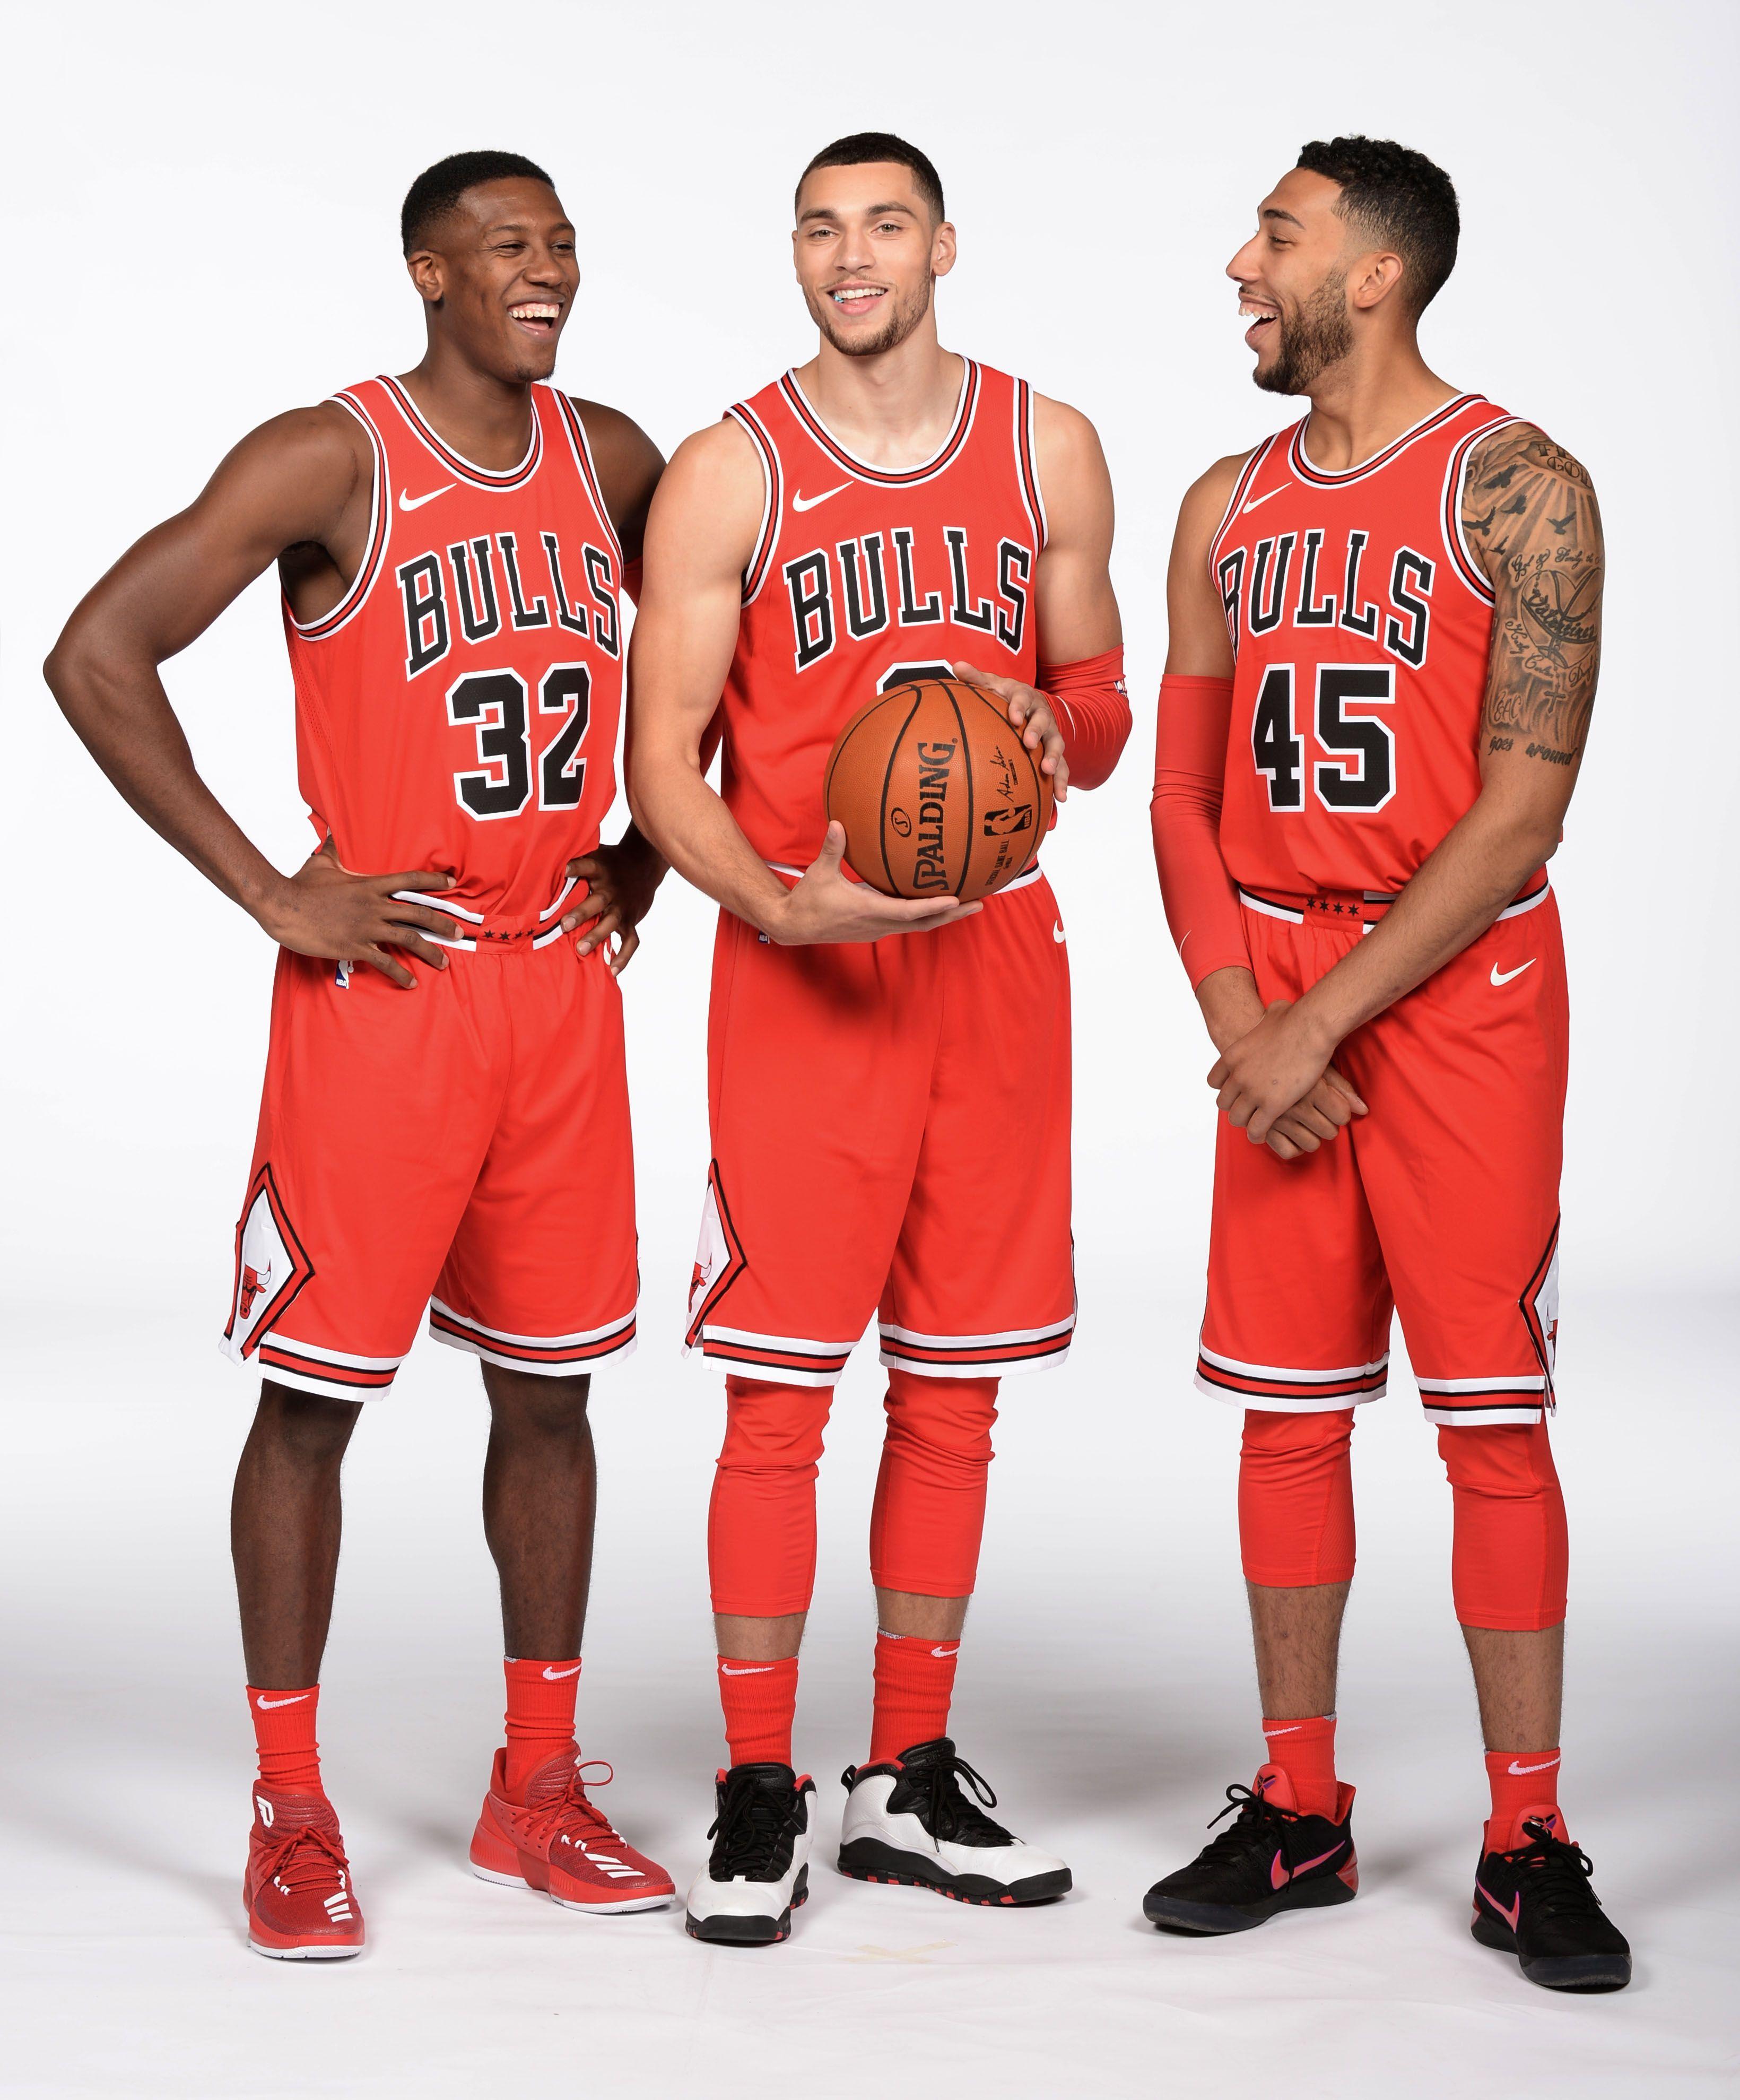 Kris Dunn, Zach Lavine and Denzel Valentine. Chicago Bulls